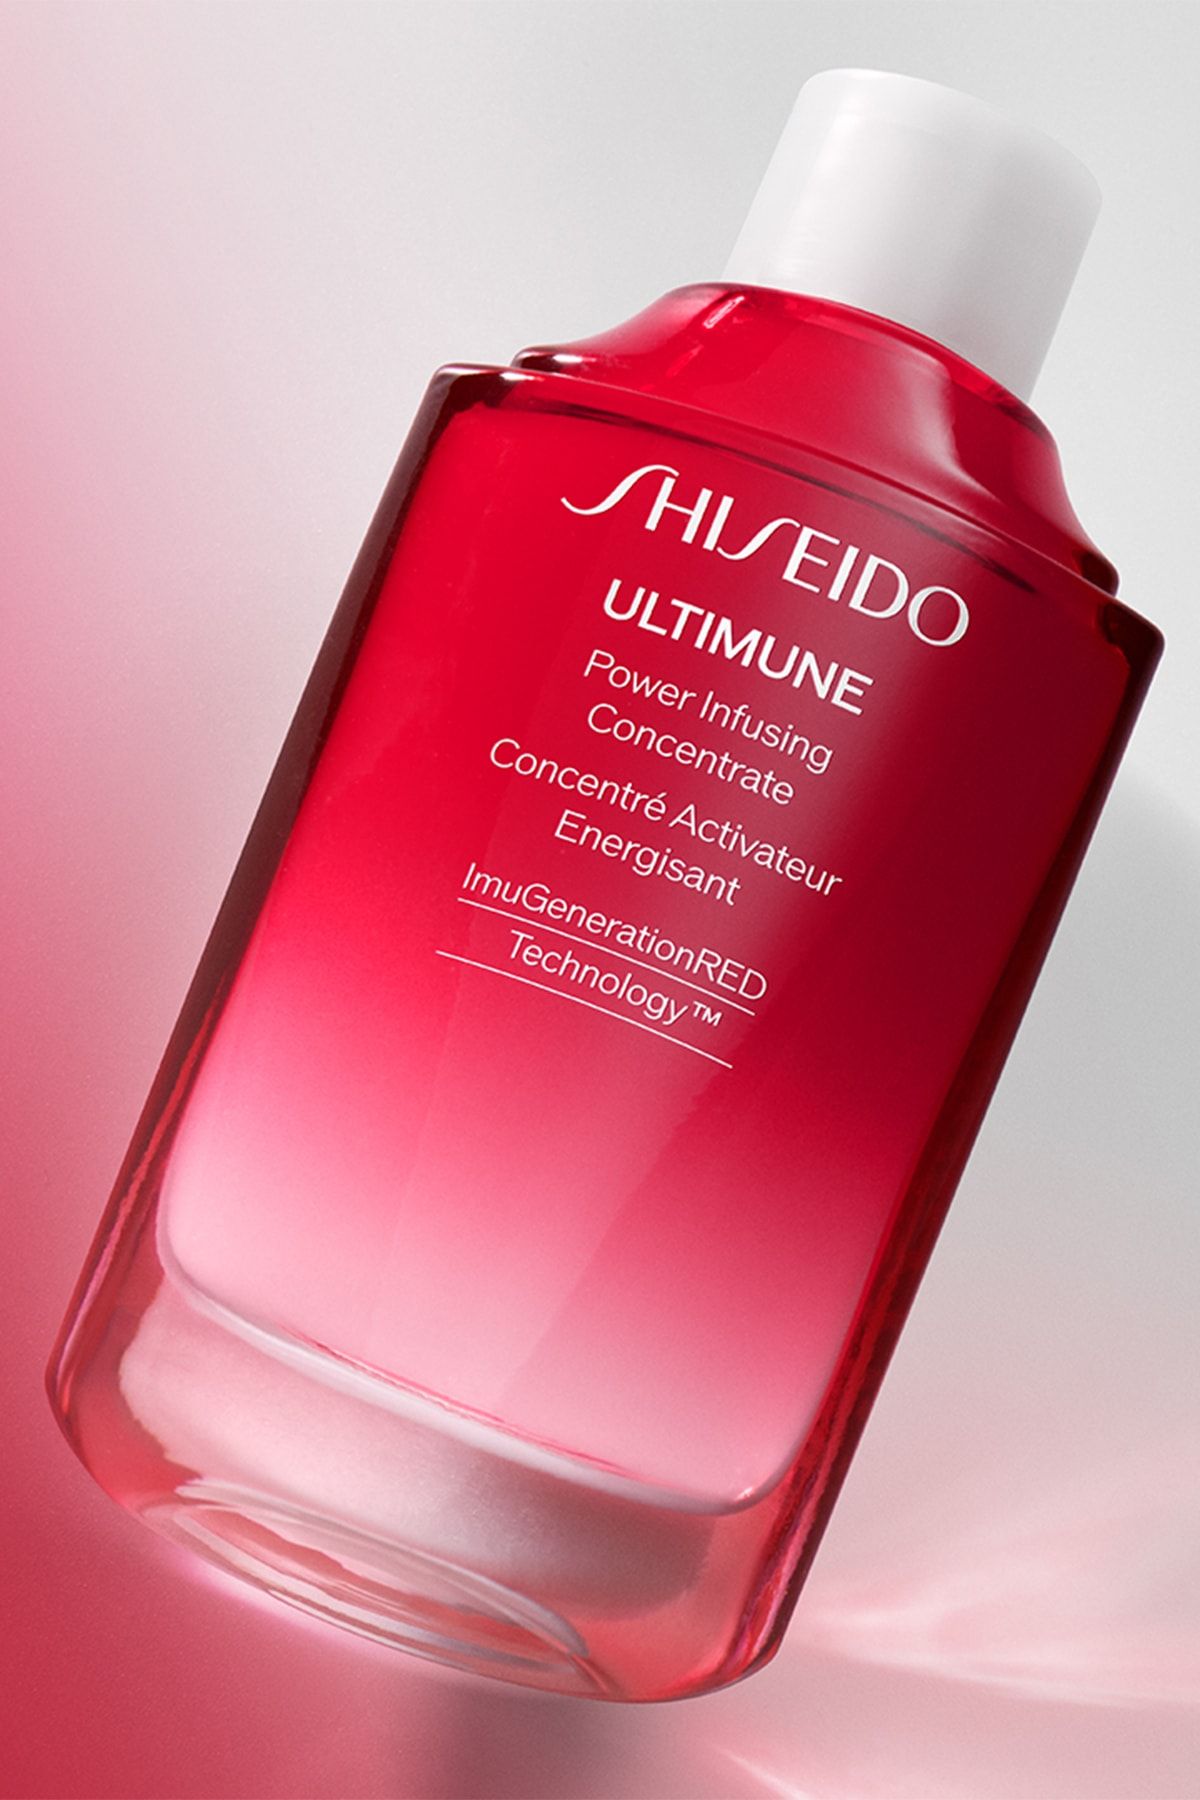 Shiseido power infusing concentrate. Концентрат Shiseido Ultimune Power infusing Concentrate. Shiseido Ultimune Power infusing Concentrate 3.0 Refill. Ultimate Power infusing Concentrate 3.0. Рефил Ultimune концентрат восстанавливающий как пользоваться.